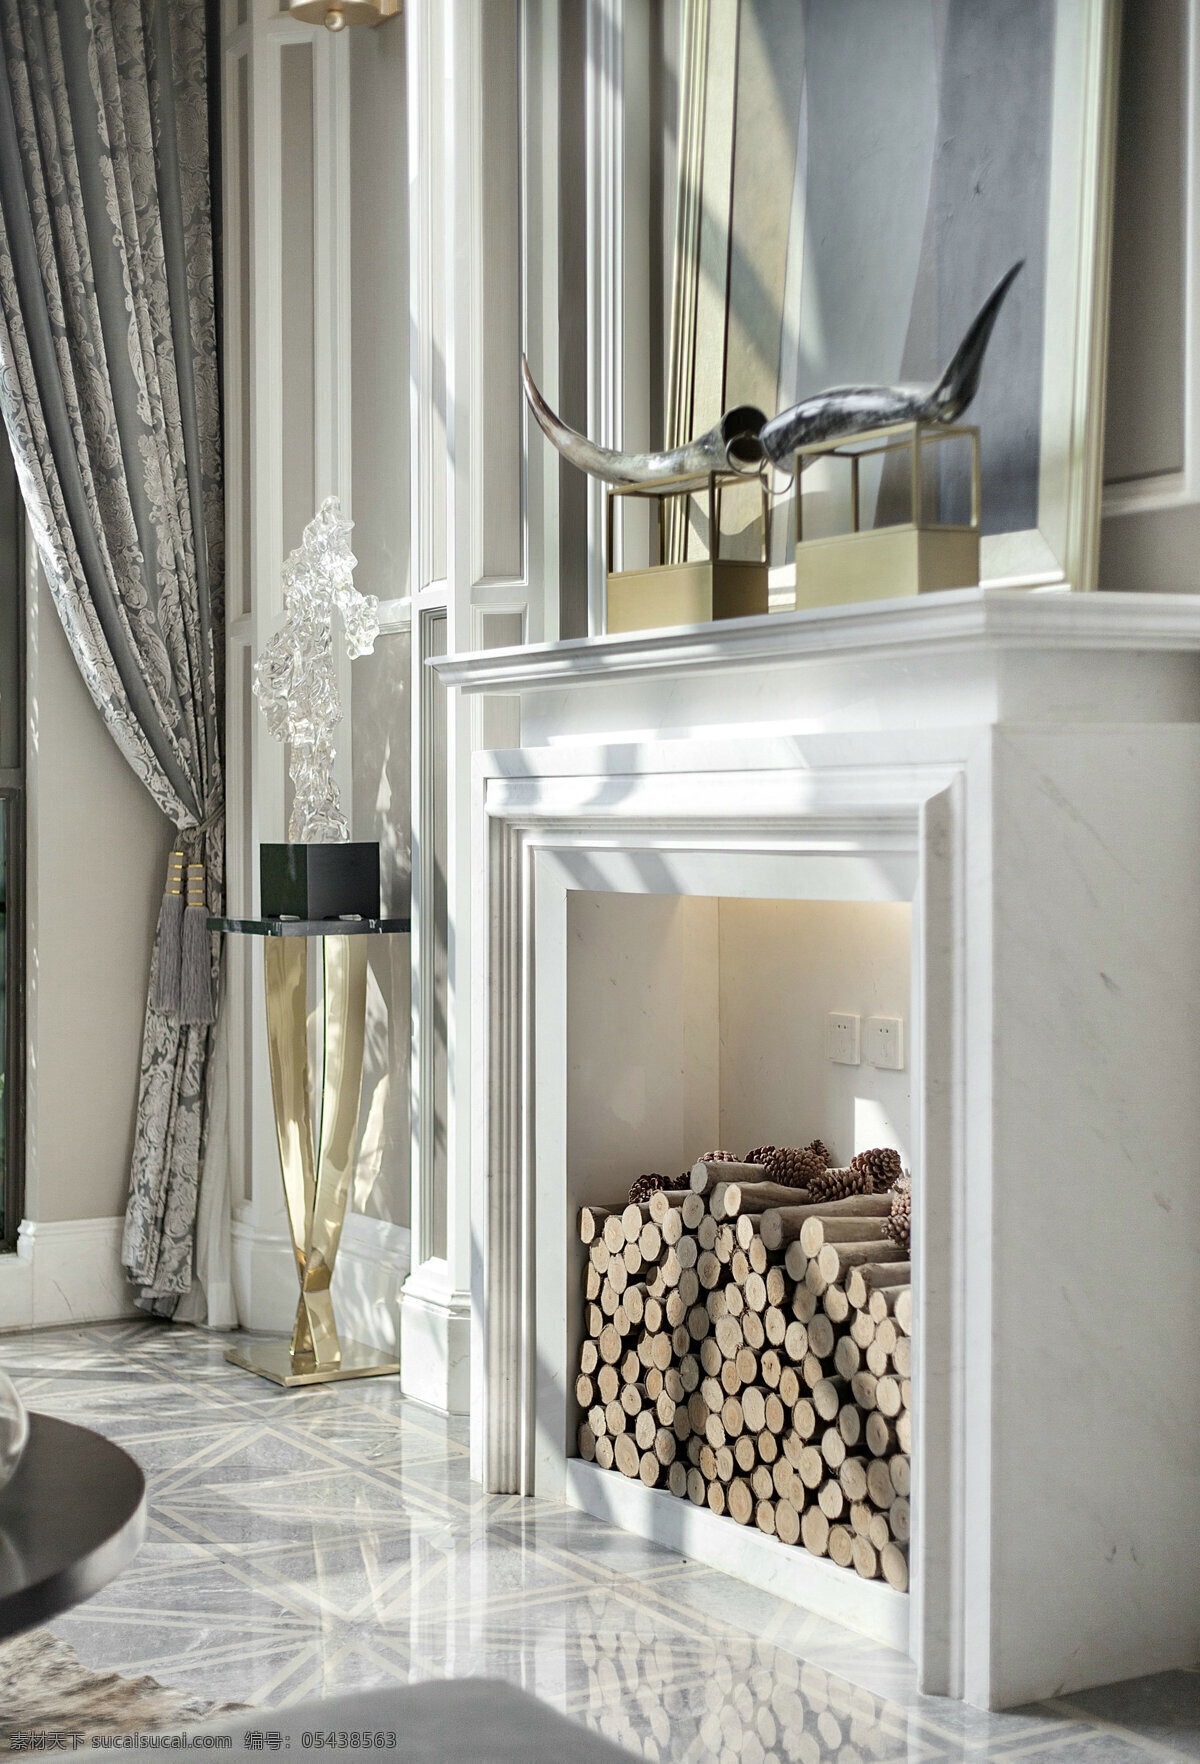 欧式 现代 时尚 客厅 壁炉 墙面 装修 效果图 温馨 卧室 大理石地面